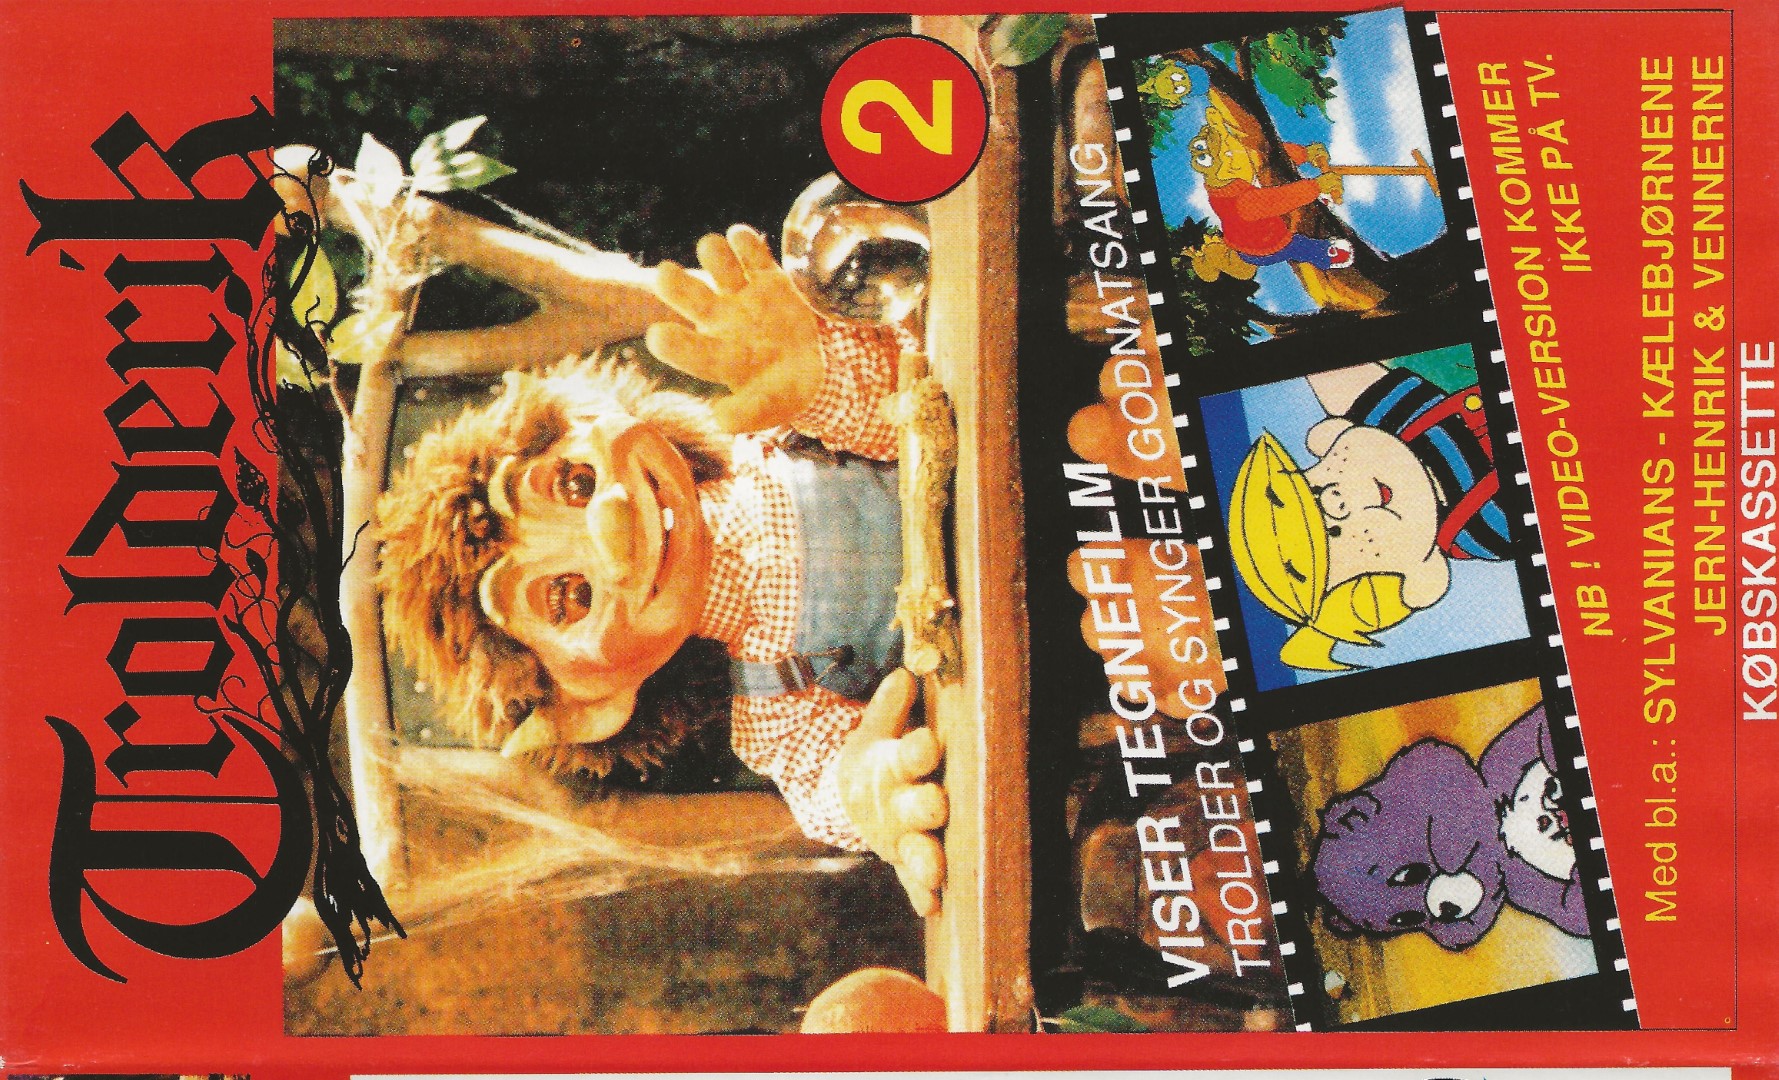 Trolderik viser tegnefilm 2  VHS Salut 1990